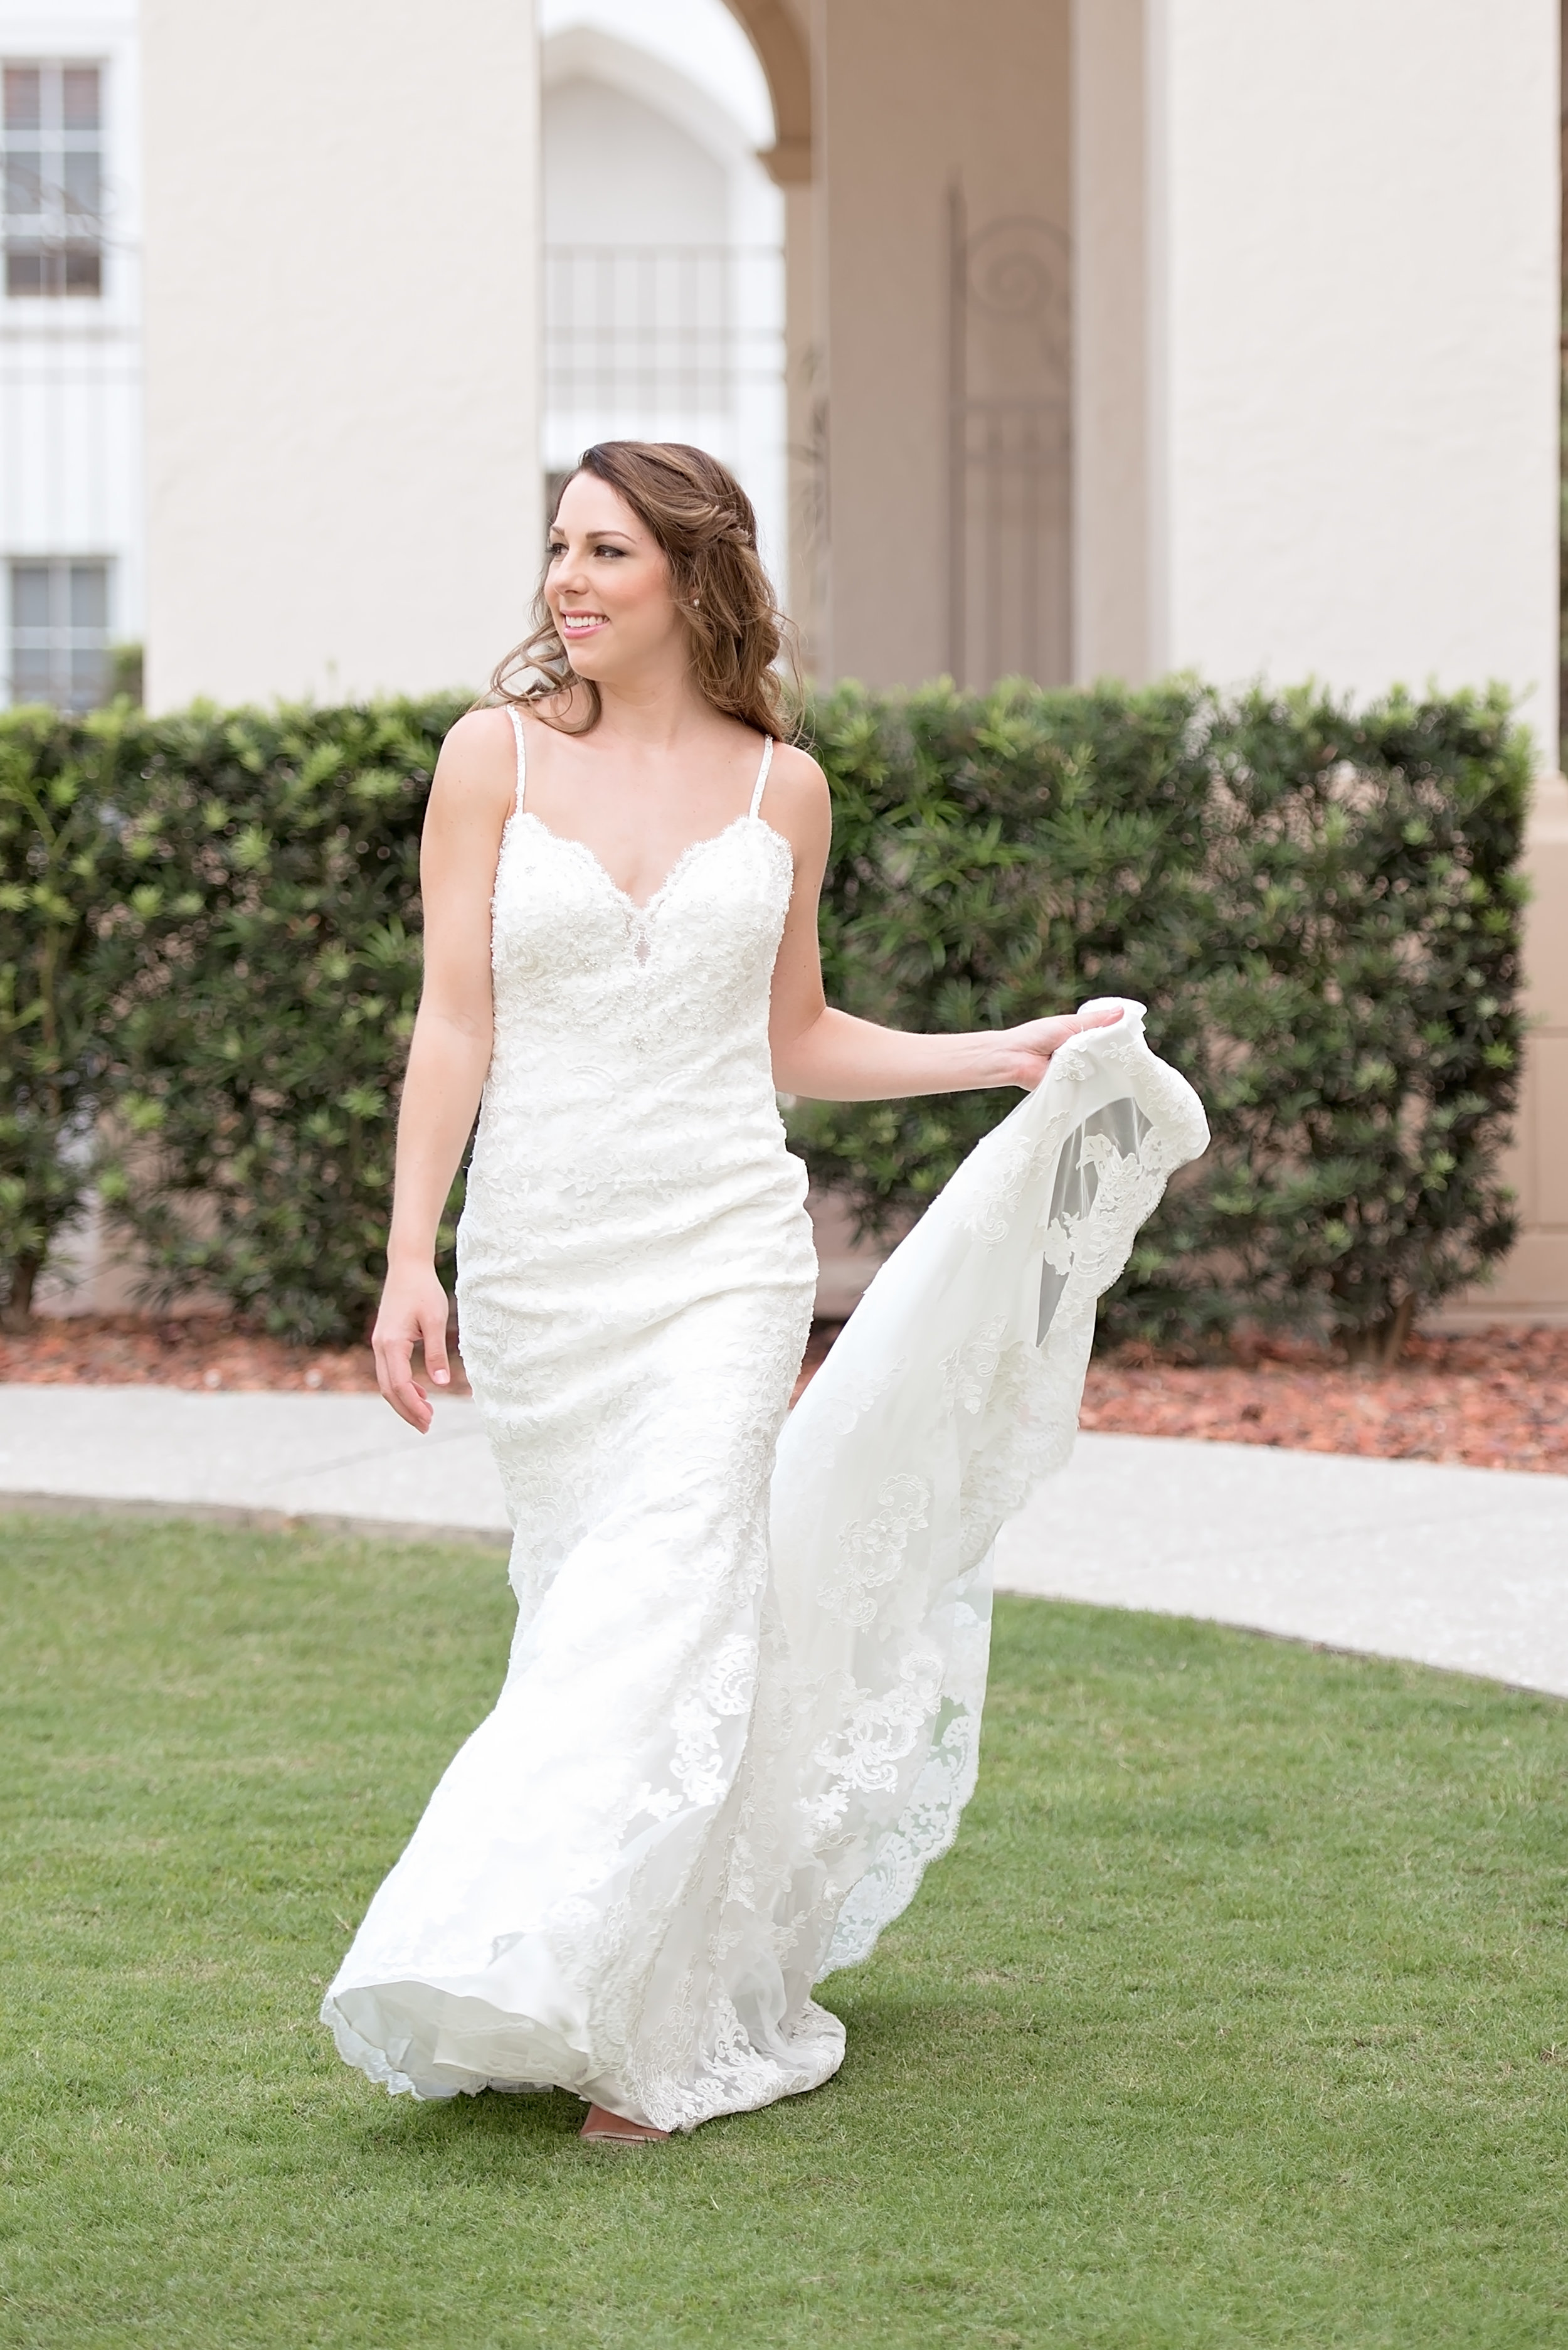 Low Back Wedding Dress - Blush and White Wedding - Los Feliz Wedding